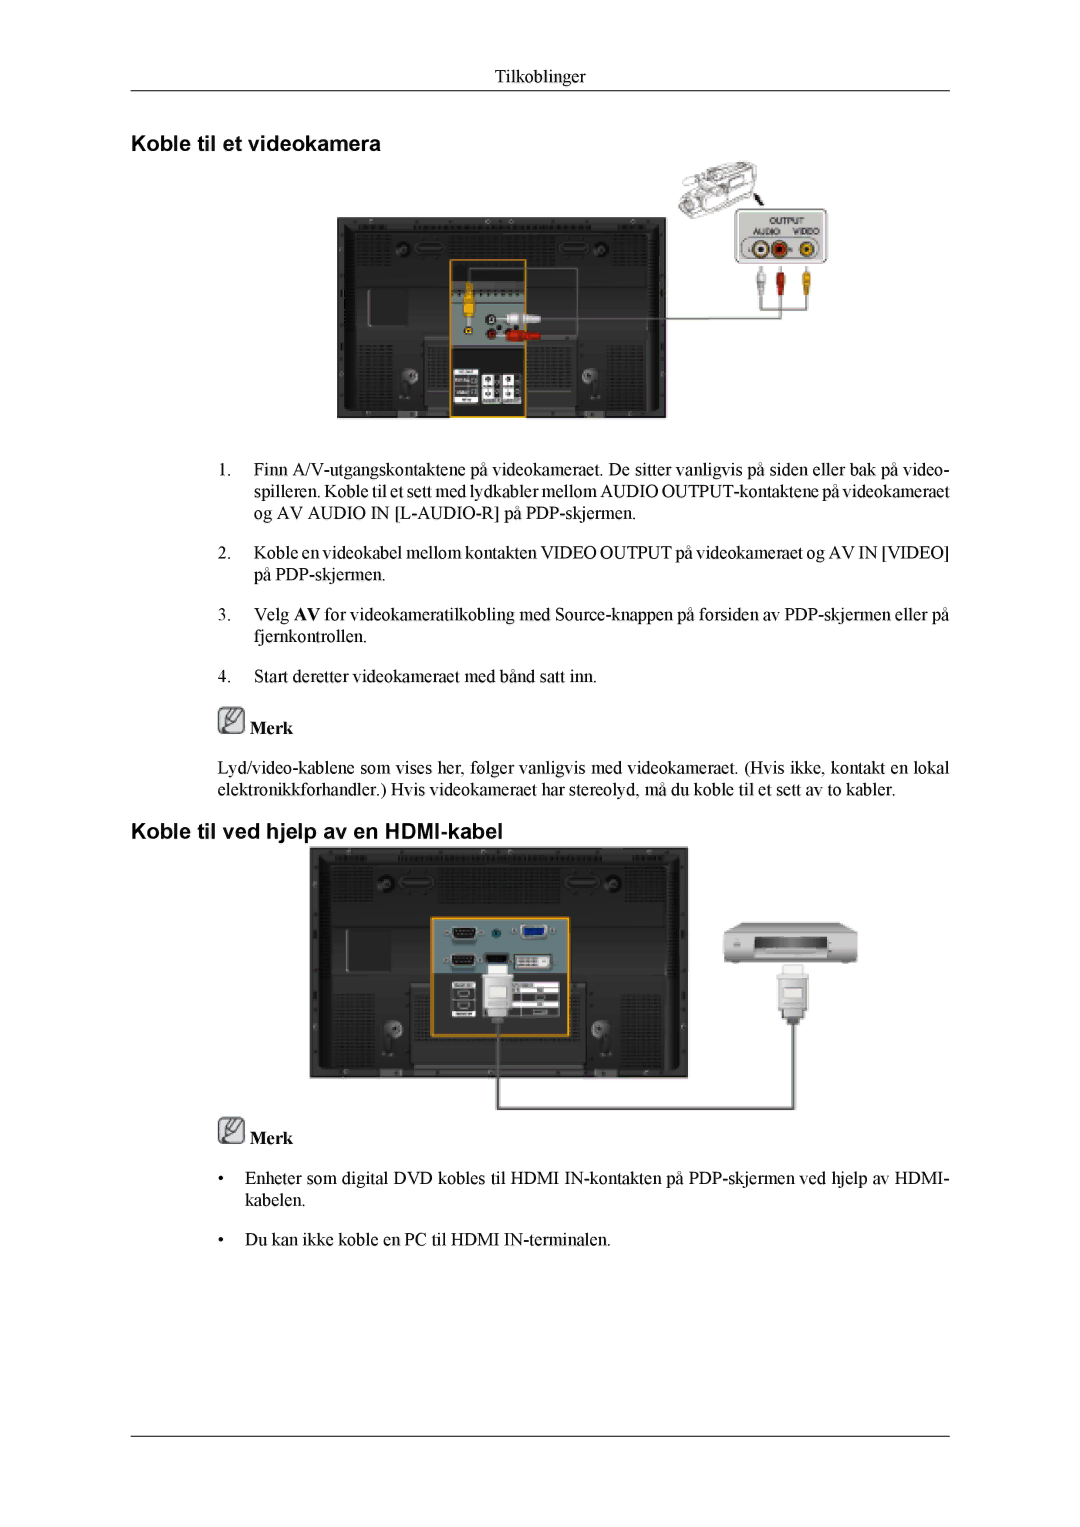 Samsung PH42KLPLBC/EN, PH50KLPLBC/EN, PH50KLTLBC/EN manual Koble til et videokamera, Koble til ved hjelp av en HDMI-kabel 